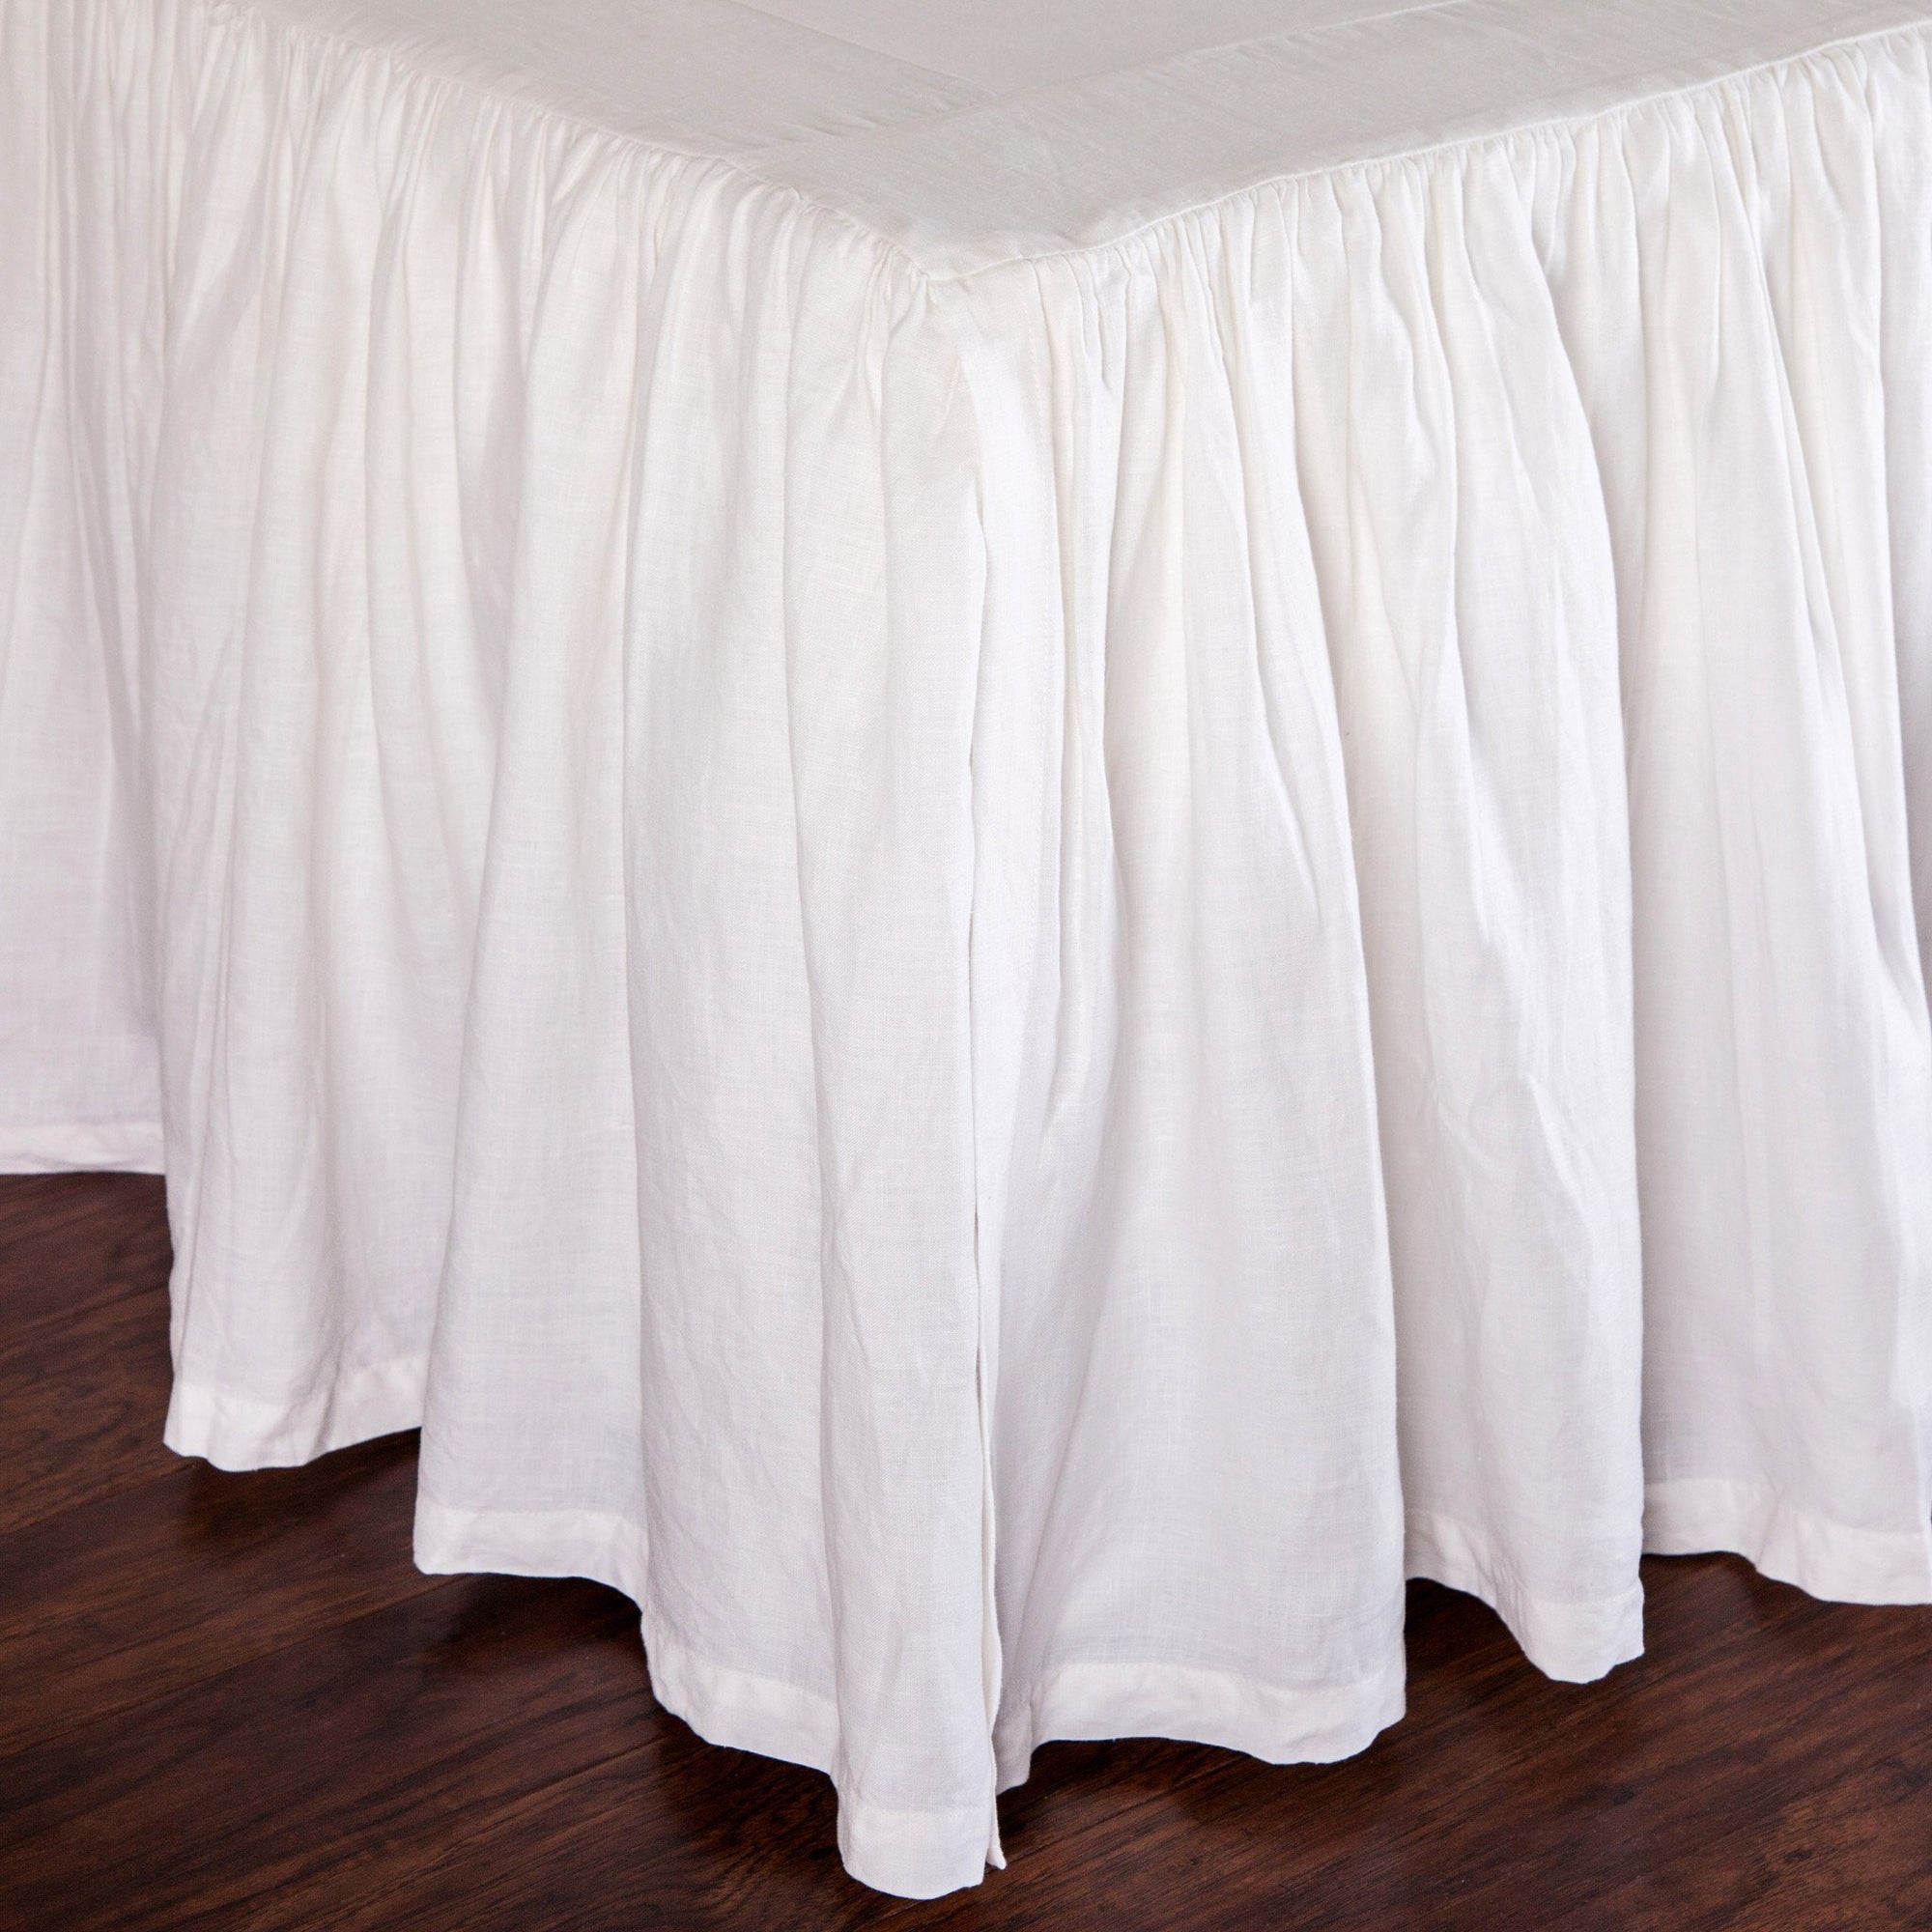 Pom Pom at Home - White Linen Gathered Bed Skirt - Fig Linens